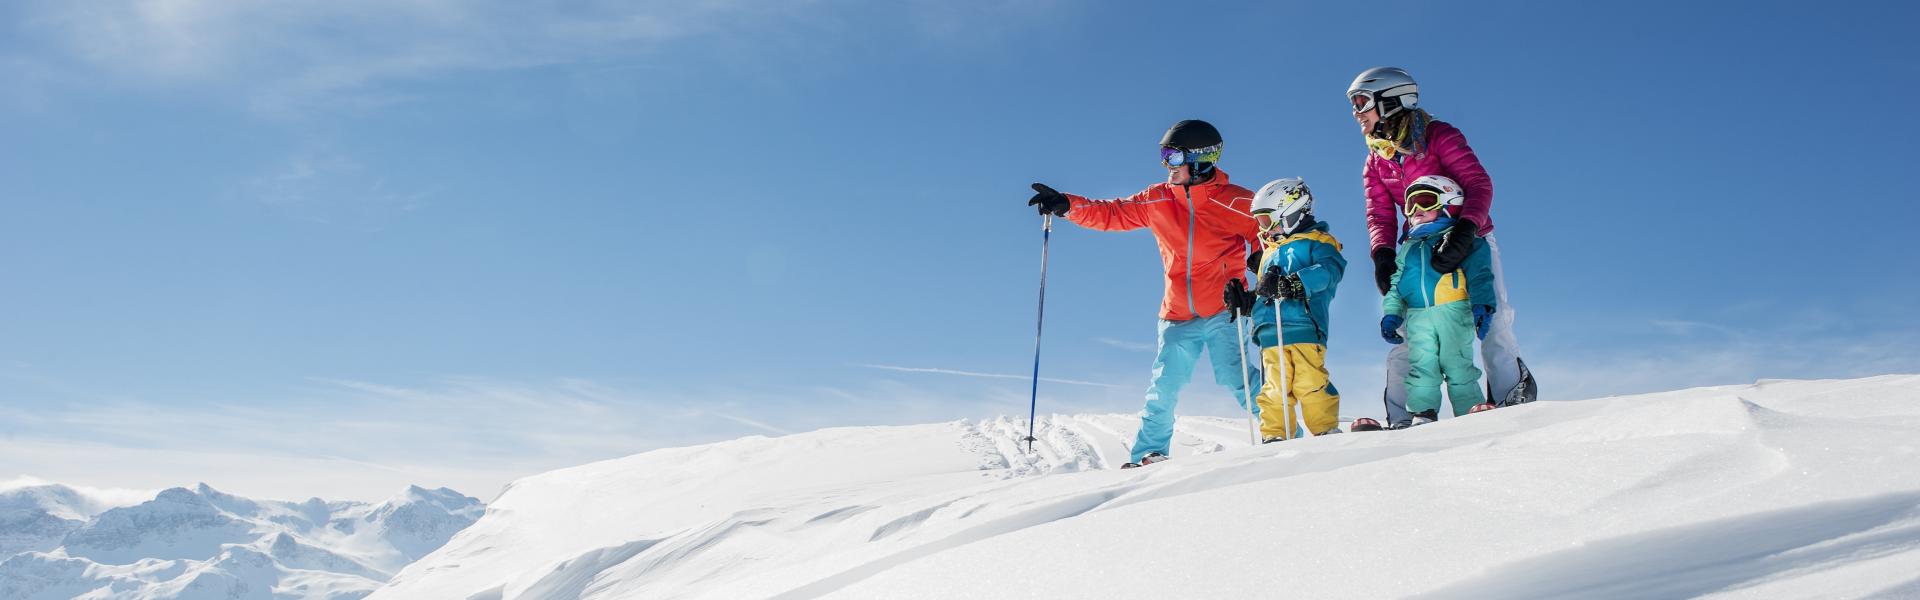 Mädchen in Ski-Ausrüstung mit Blick über verschneite Alpen